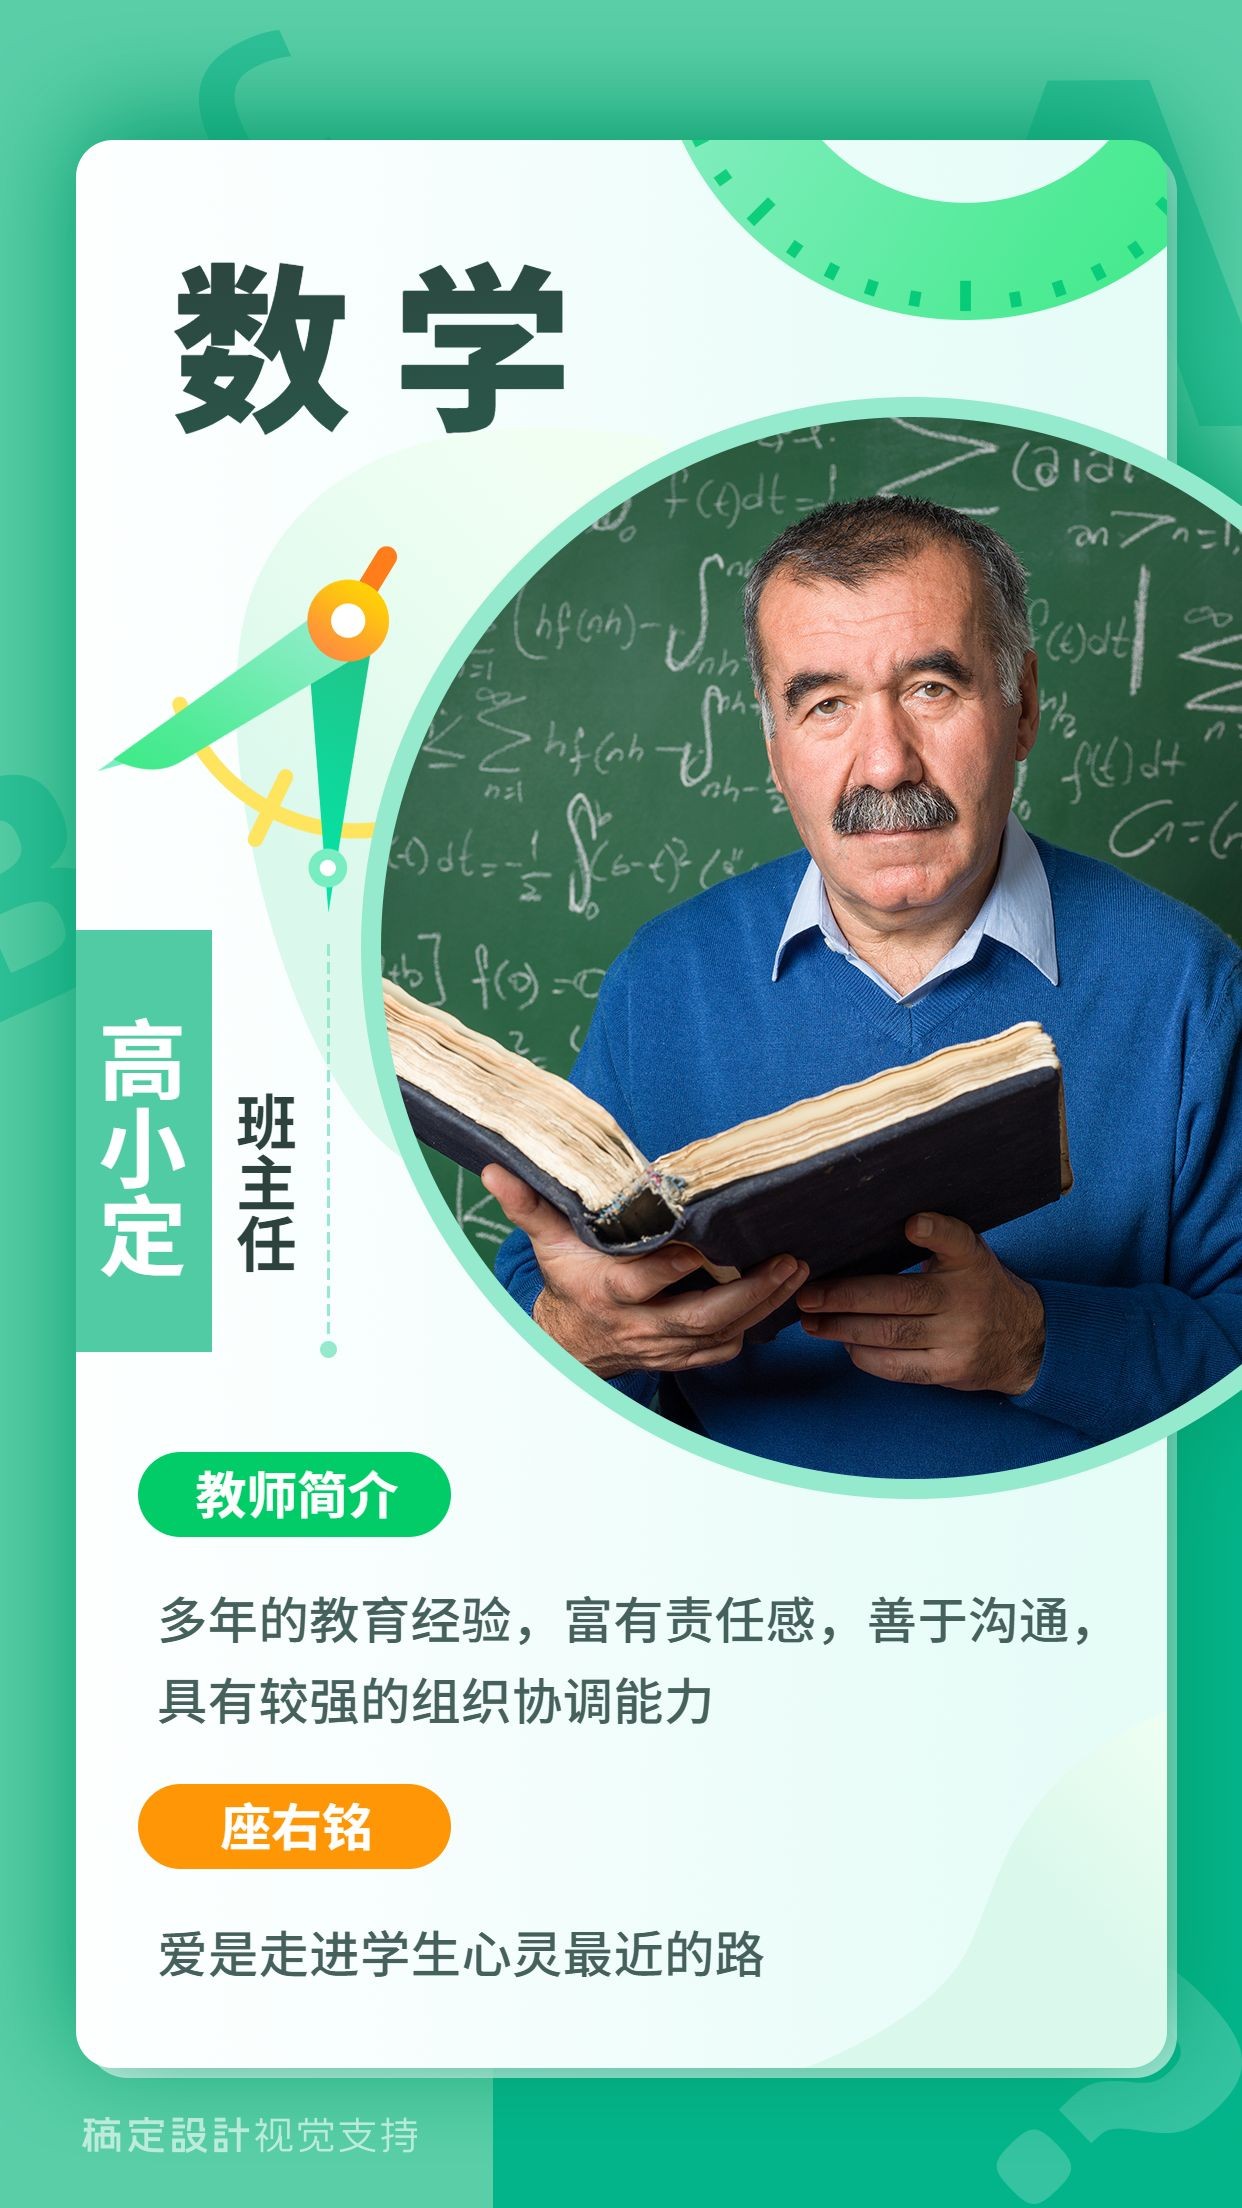 初高中数学老师人物介绍清新海报预览效果